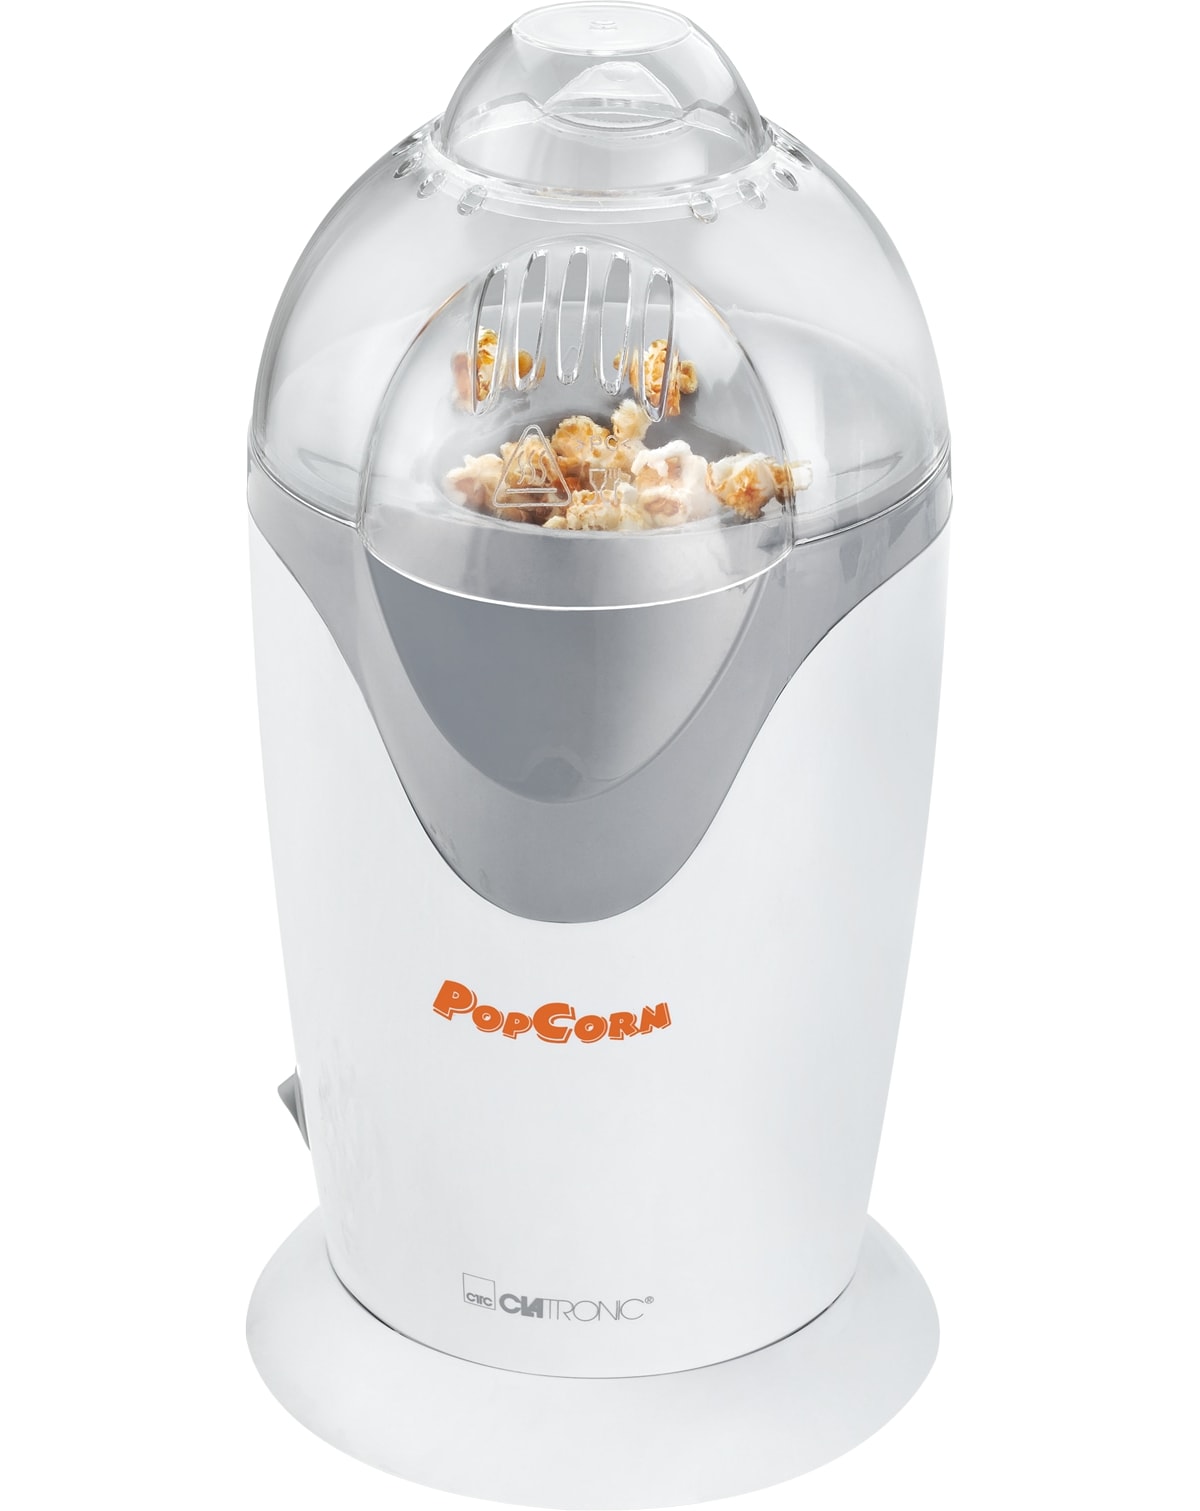 CLATRONIC Popcornmaschine PM 3635, 1200 W, weiß